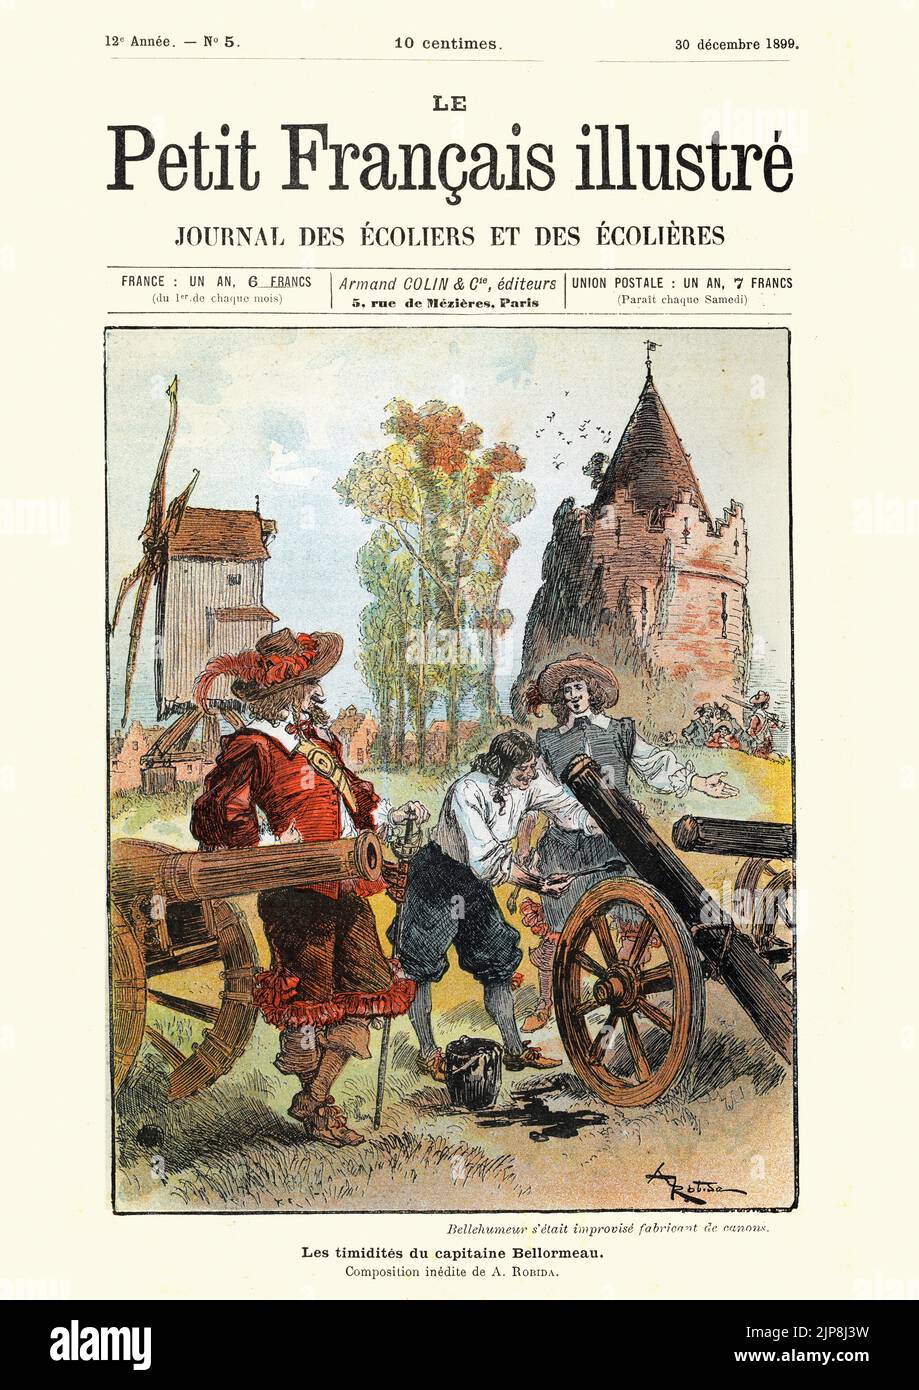 Ilustración de la historia 'Le Capitaine Bellormeau', de Robida. Bellehumeur ha improvisado como fabricante de cañones Foto de stock